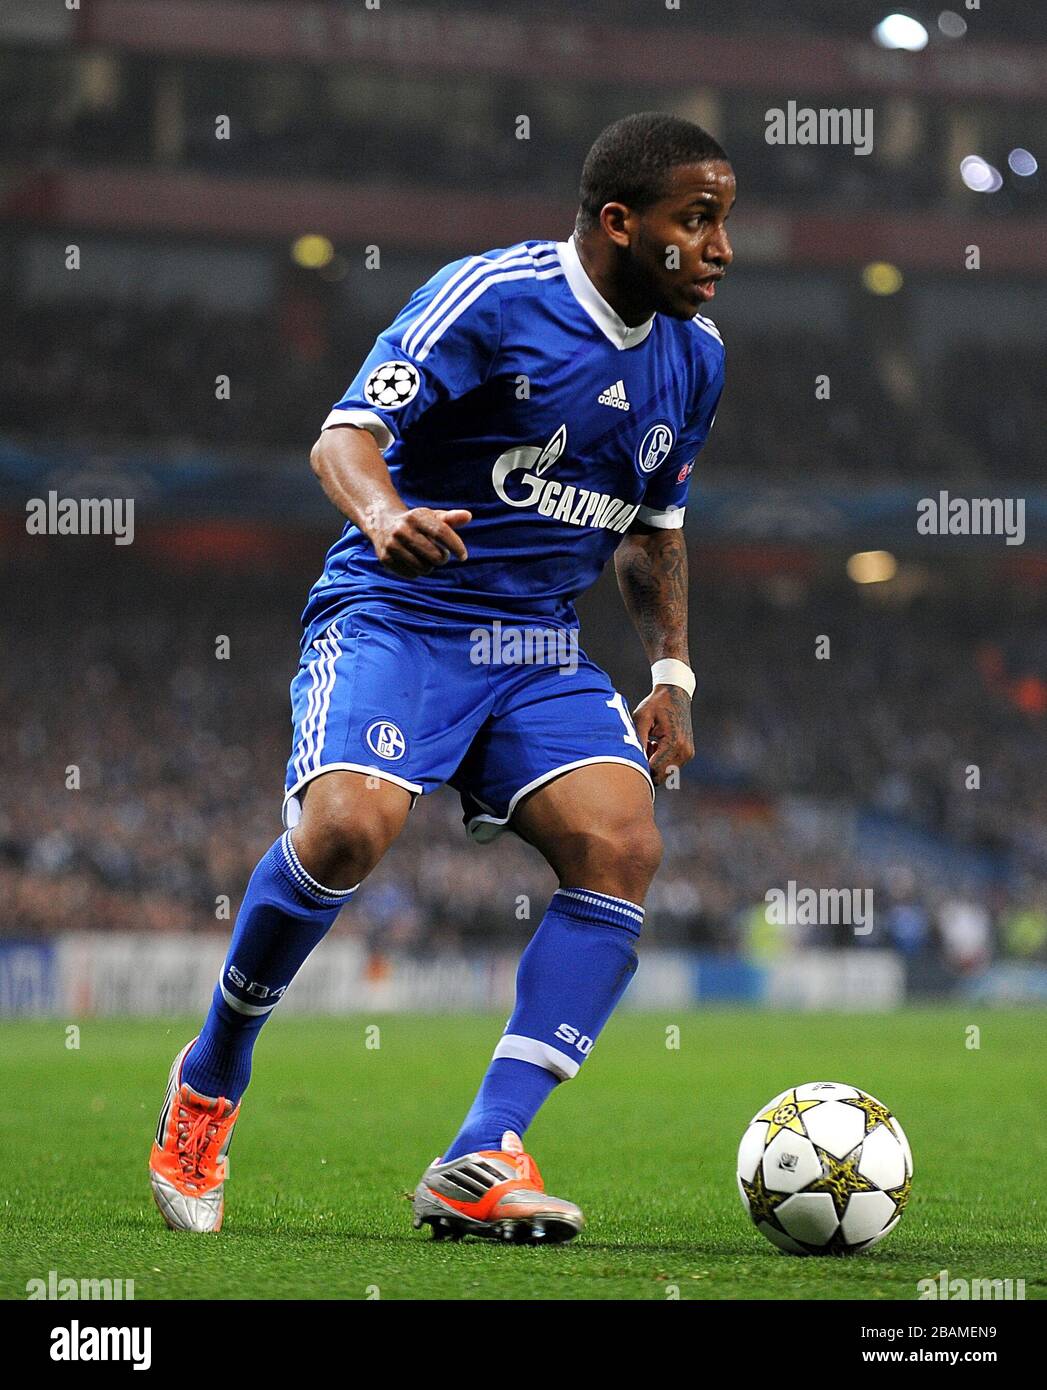 Jefferson Farfan, Schalke 04 Stock Photo